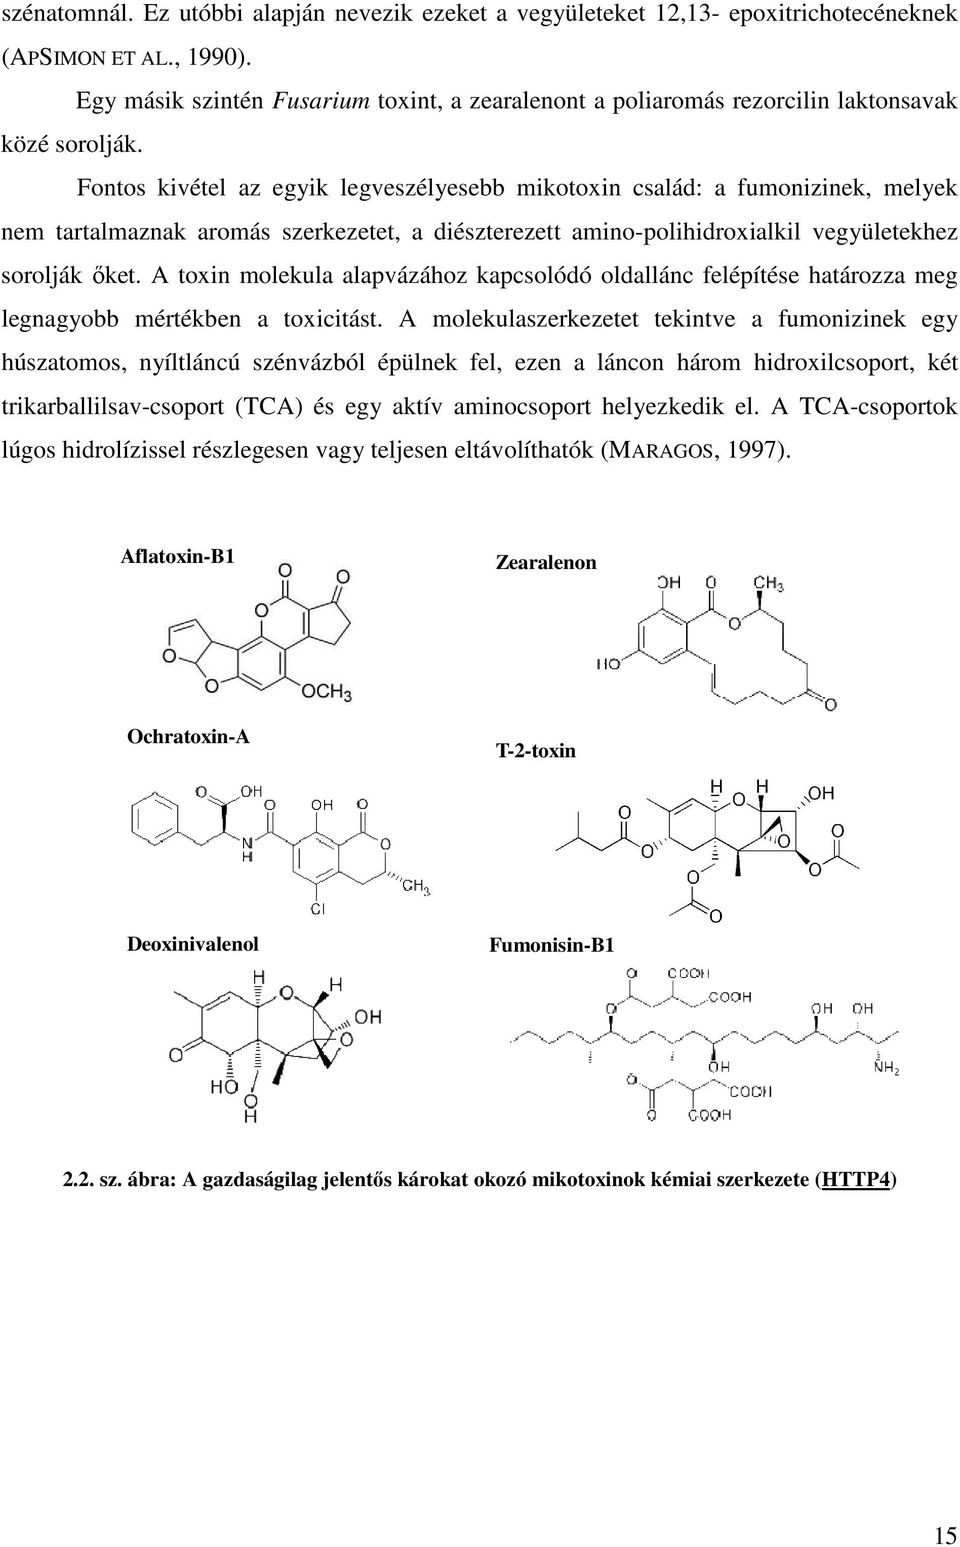 Fontos kivétel az egyik legveszélyesebb mikotoxin család: a fumonizinek, melyek nem tartalmaznak aromás szerkezetet, a diészterezett amino-polihidroxialkil vegyületekhez sorolják ıket.